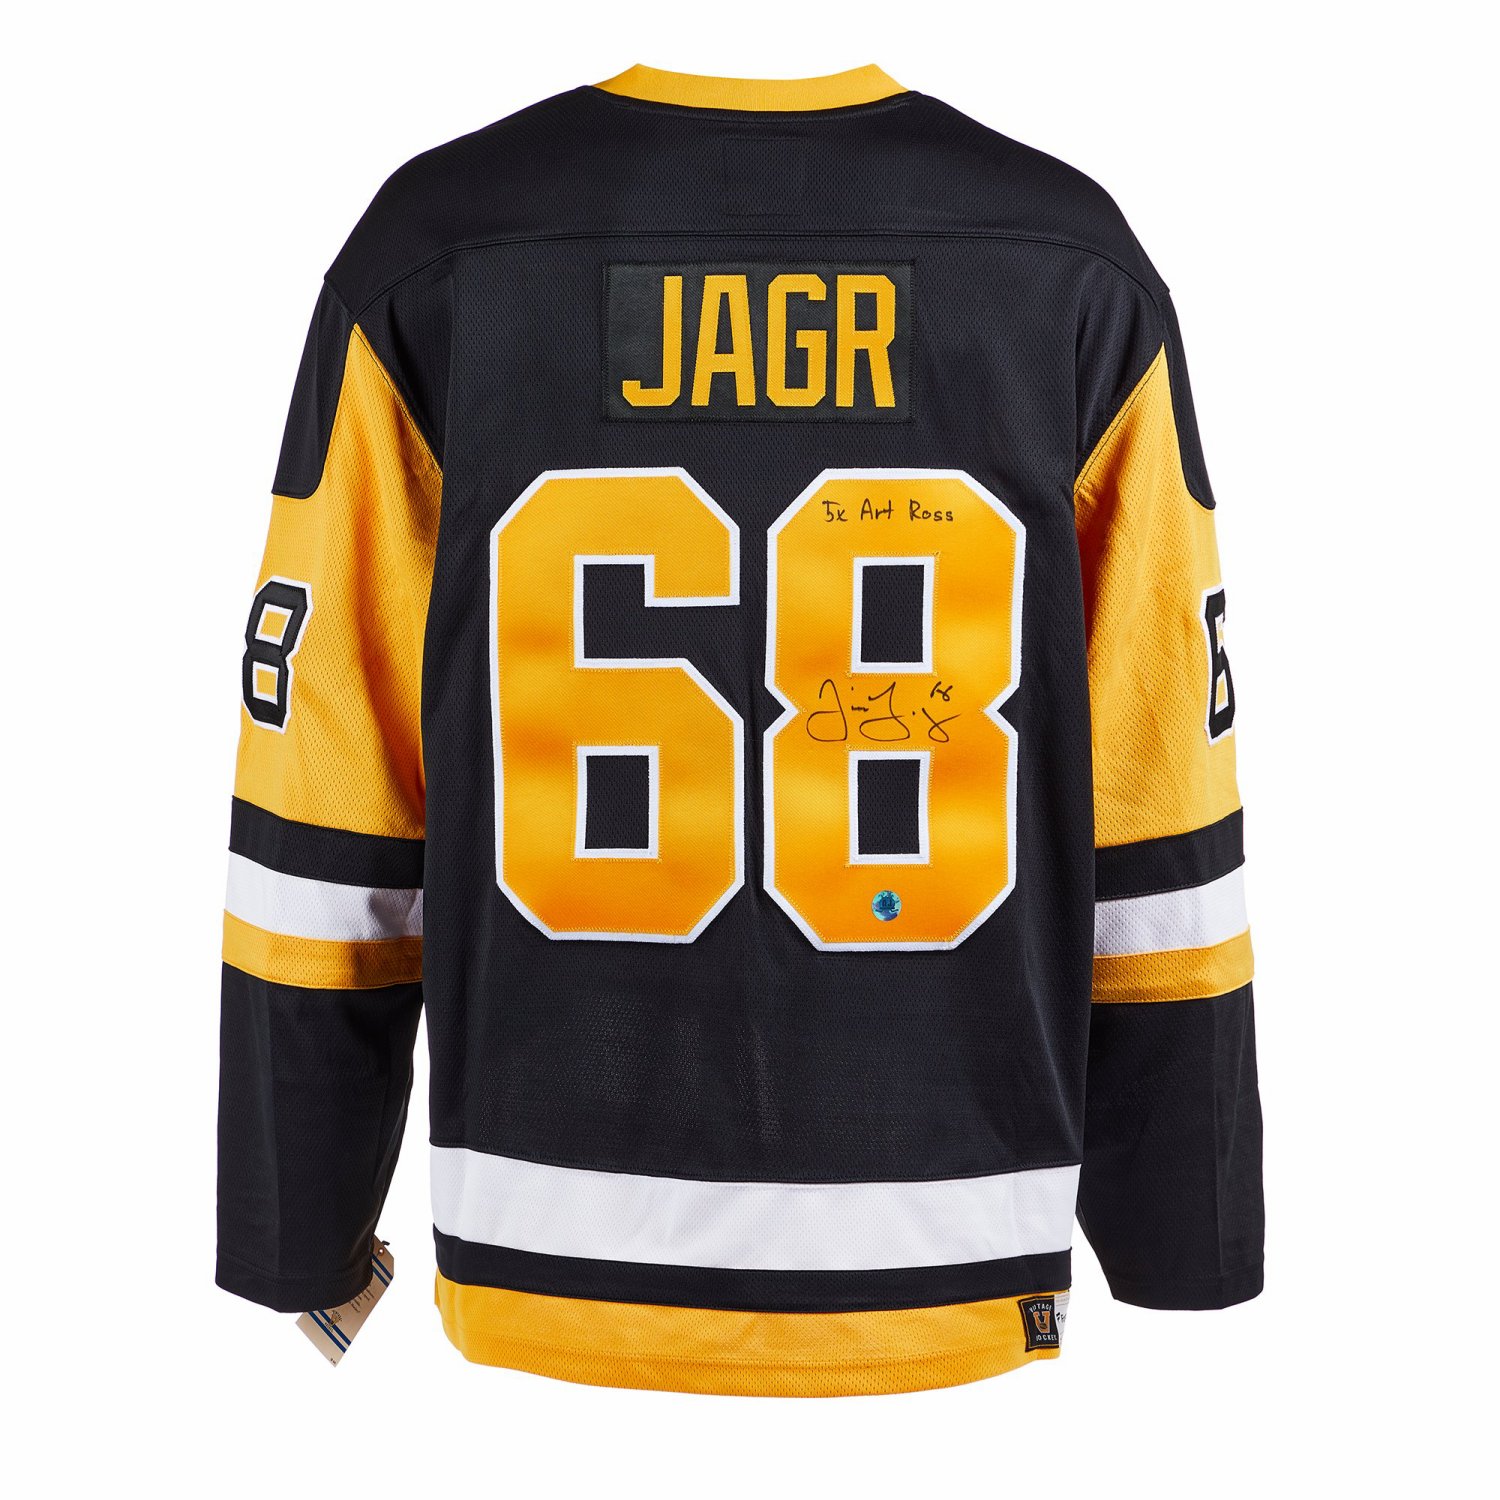 Jaromir Jagr Pittsburgh Penguins Fanatics Authentic Autographed